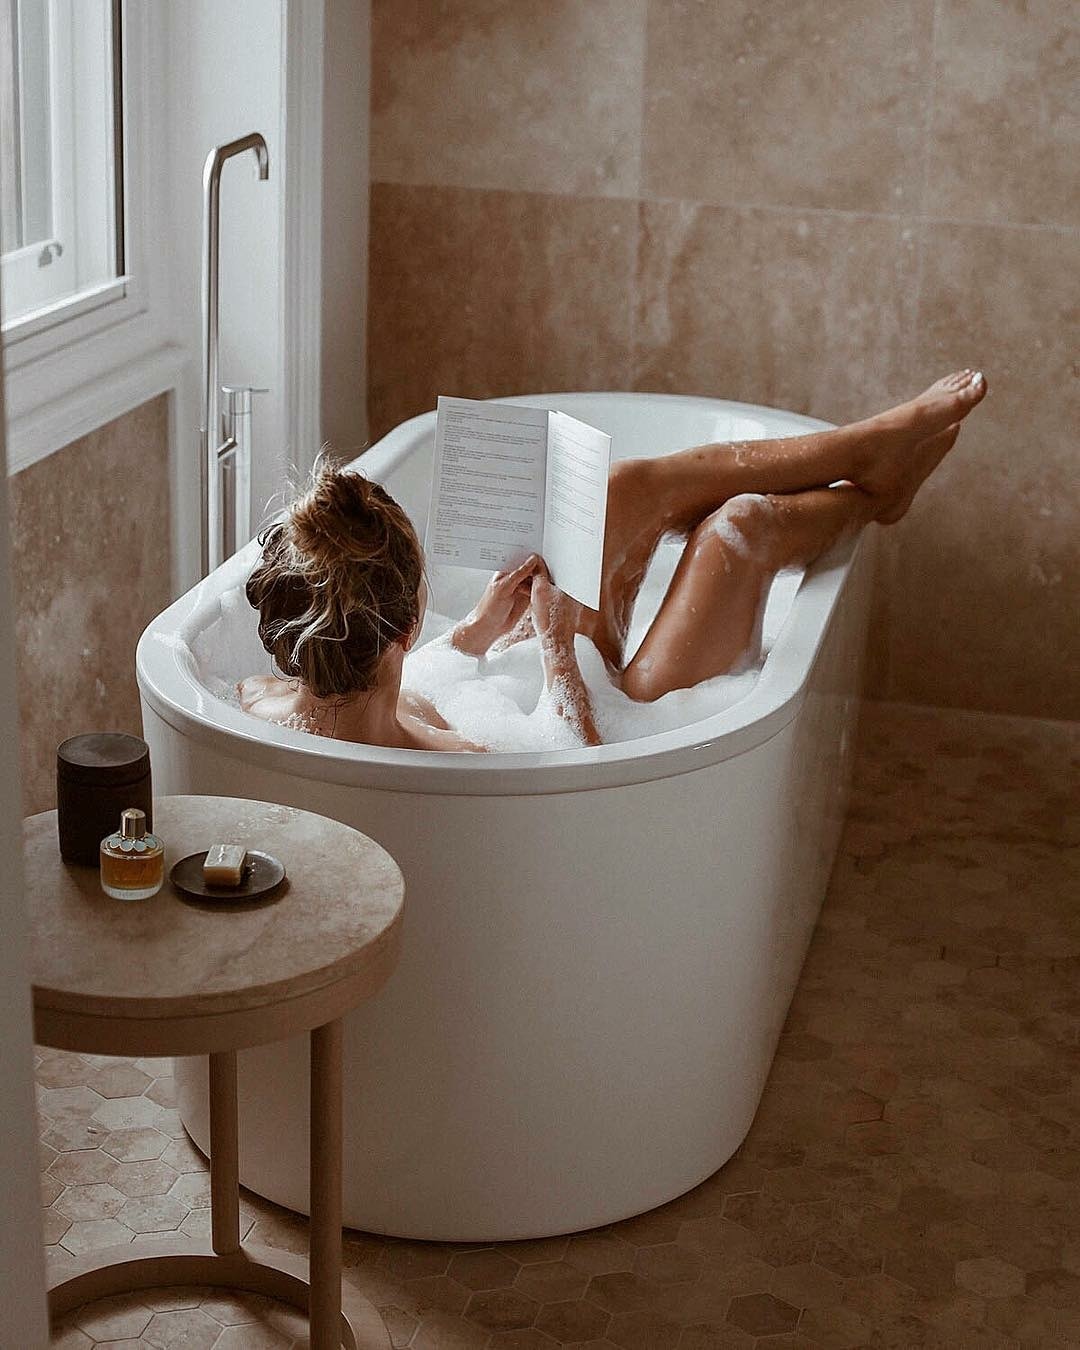 People 1080x1350 bathtub in bathtub legs women model Alexander Deniskin women indoors rear view barefoot reading